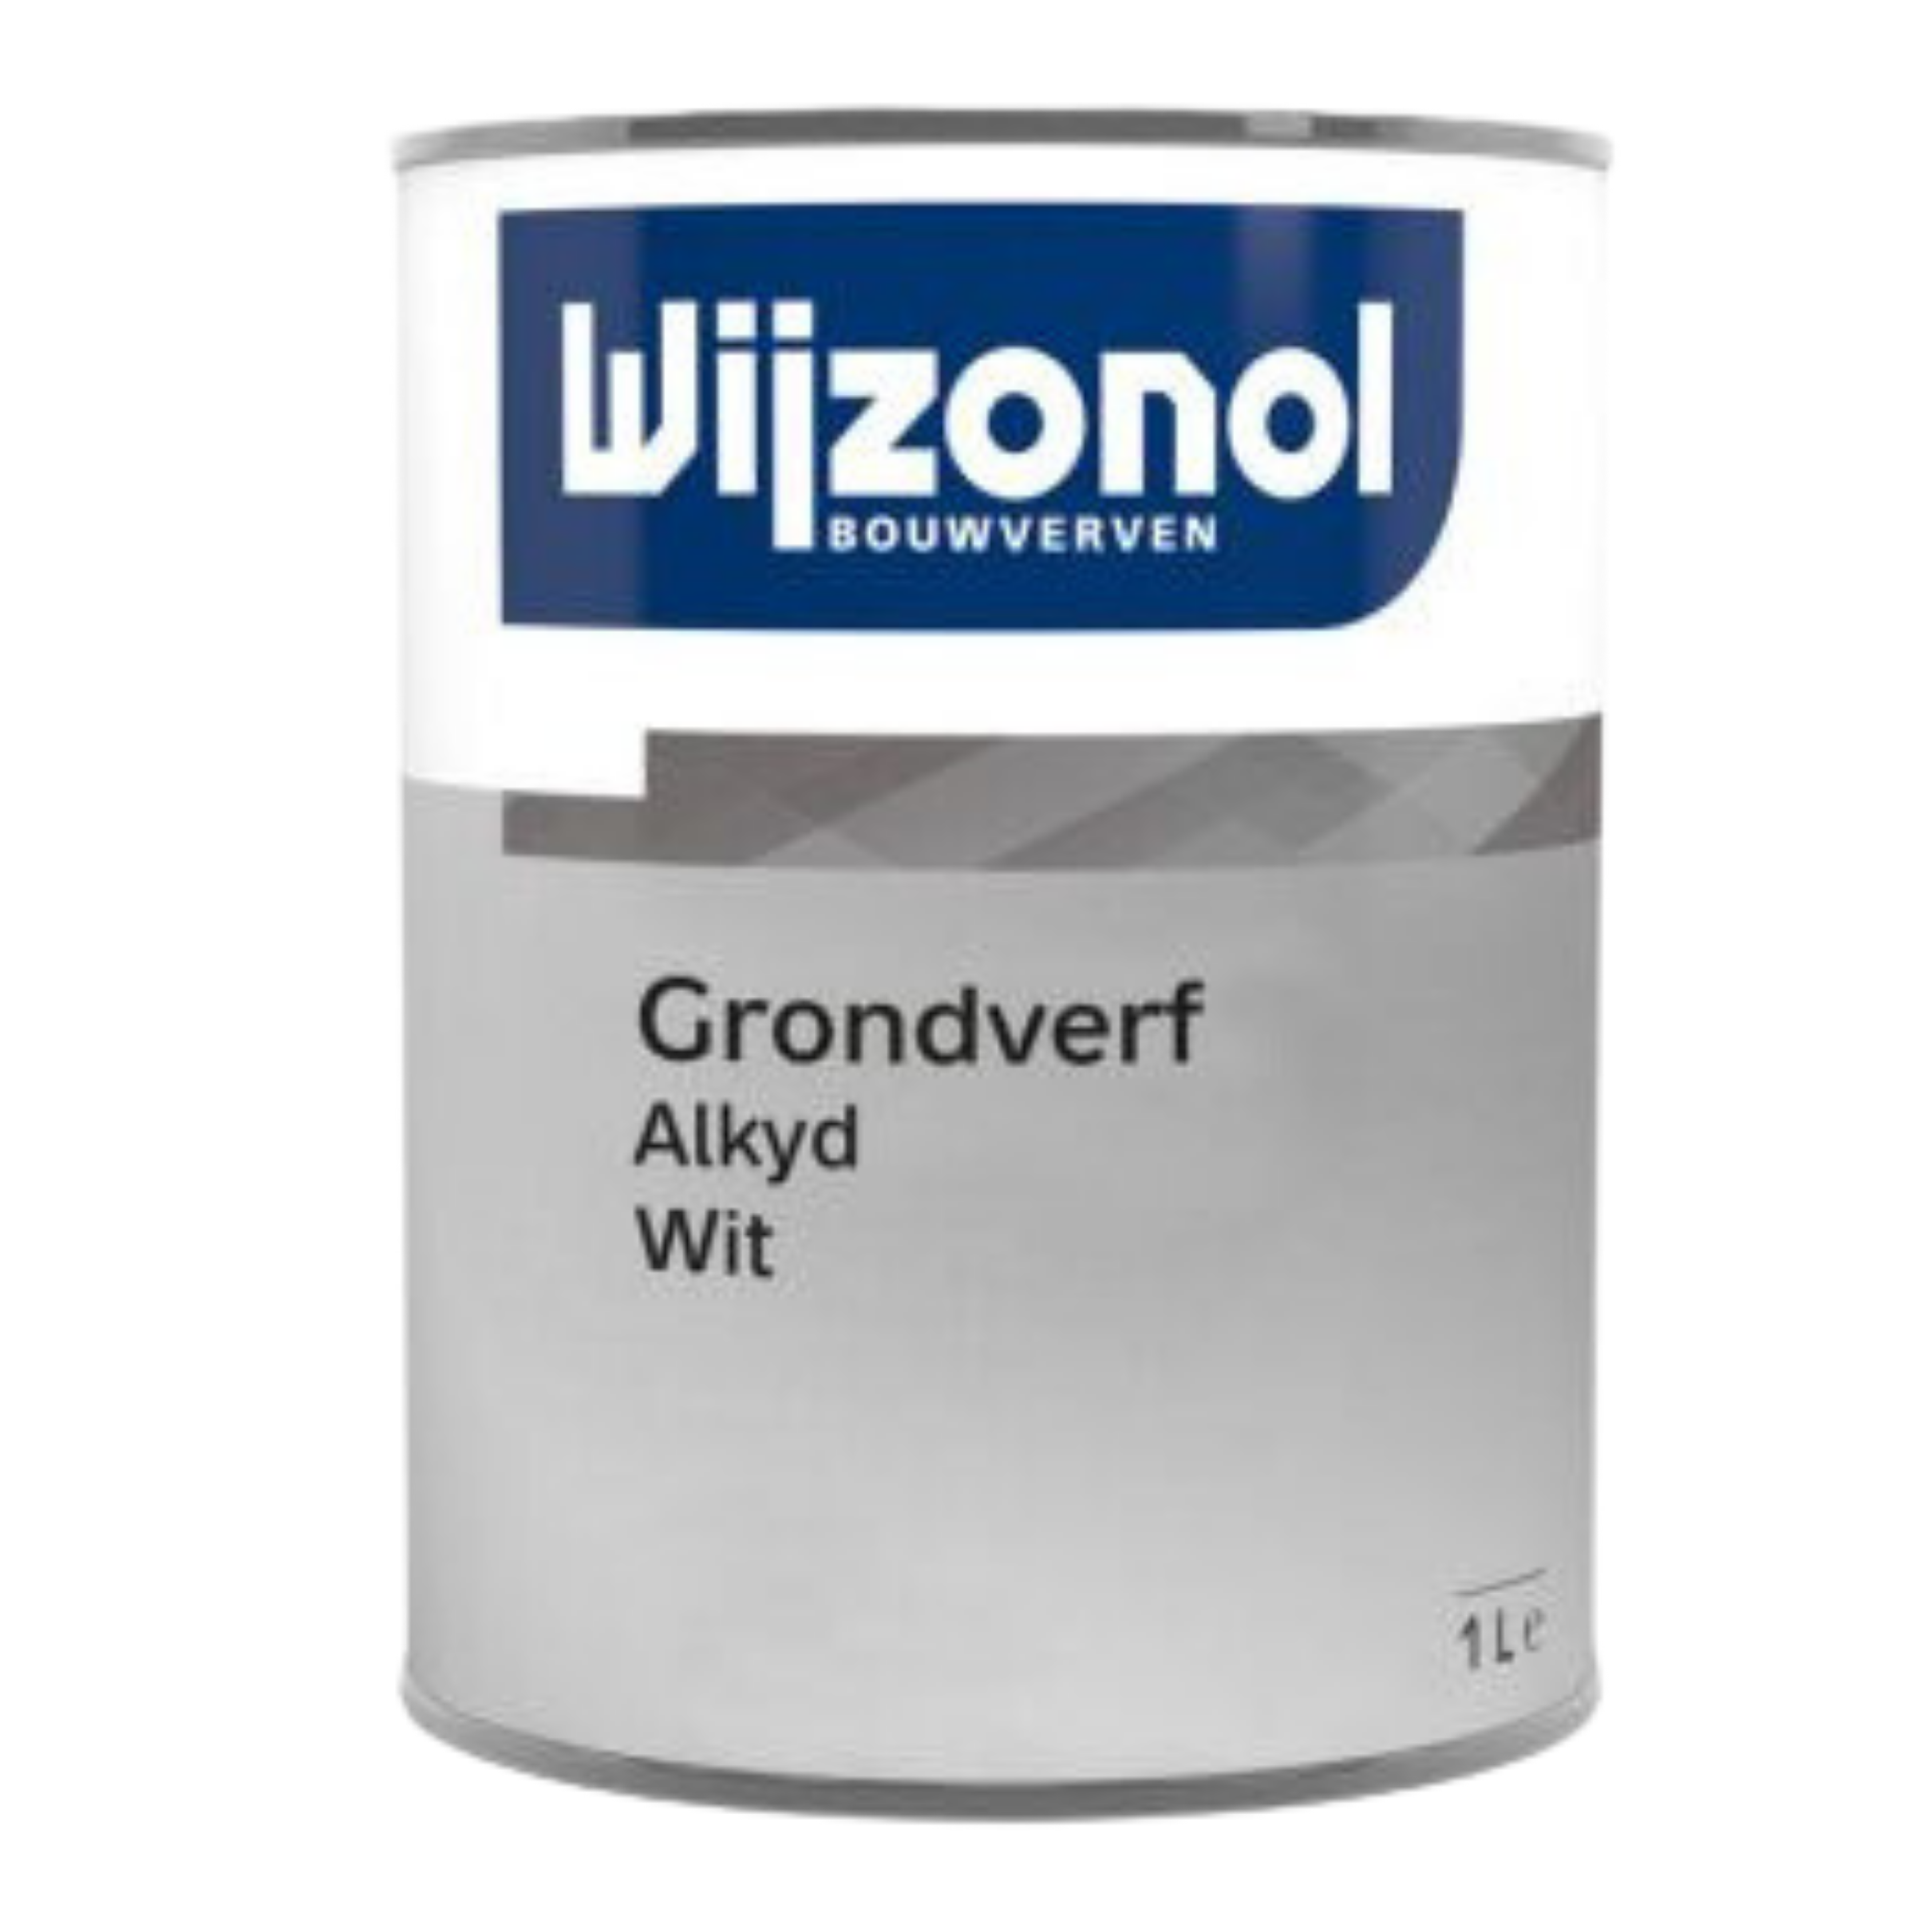 Wijzonol Grondverf Alkyd 2.5 RAL 9001